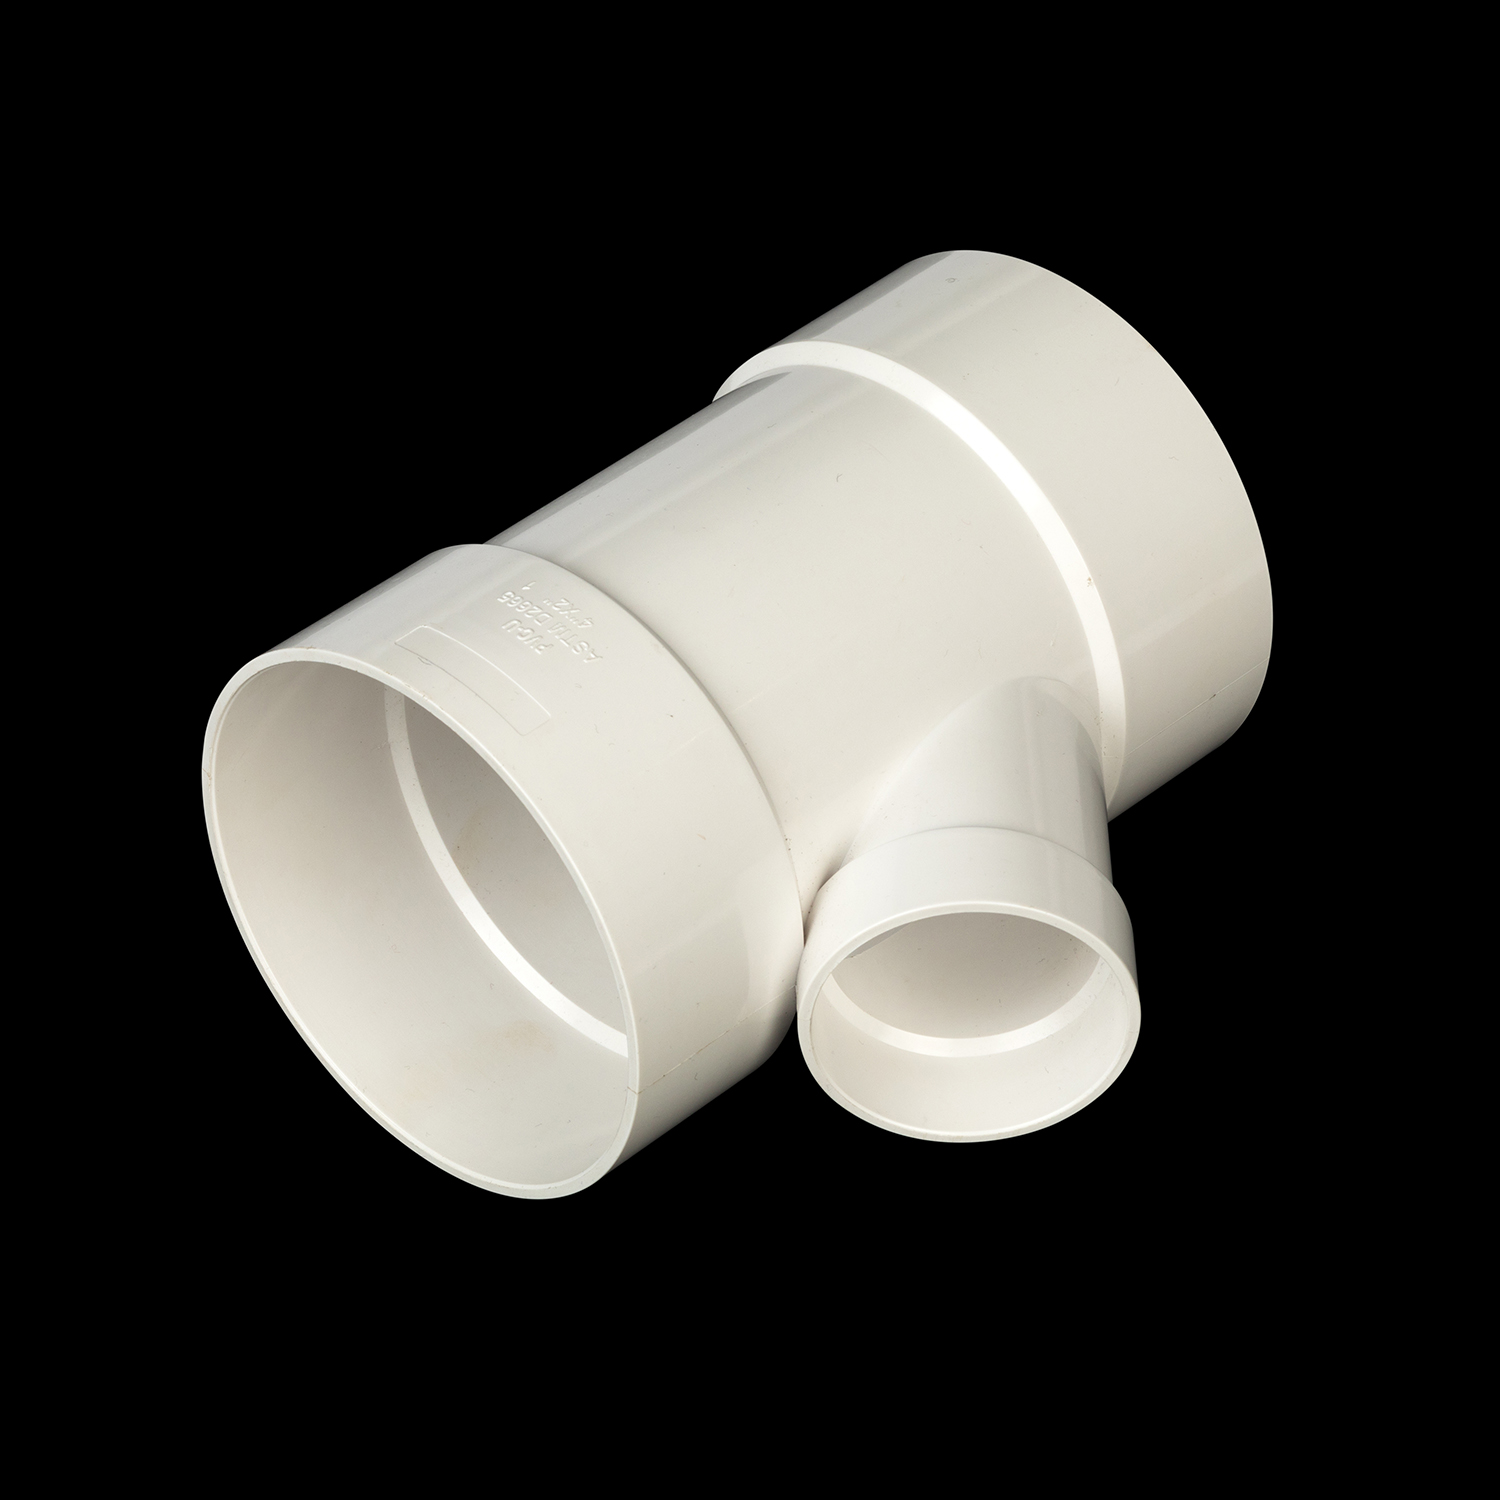 Fábrica al por mayor de alta calidad PVC Tubo de PVC accesorios Fabricantes Fabricantes PVC de plástico Agua Reduciendo Y-Tee Fitting